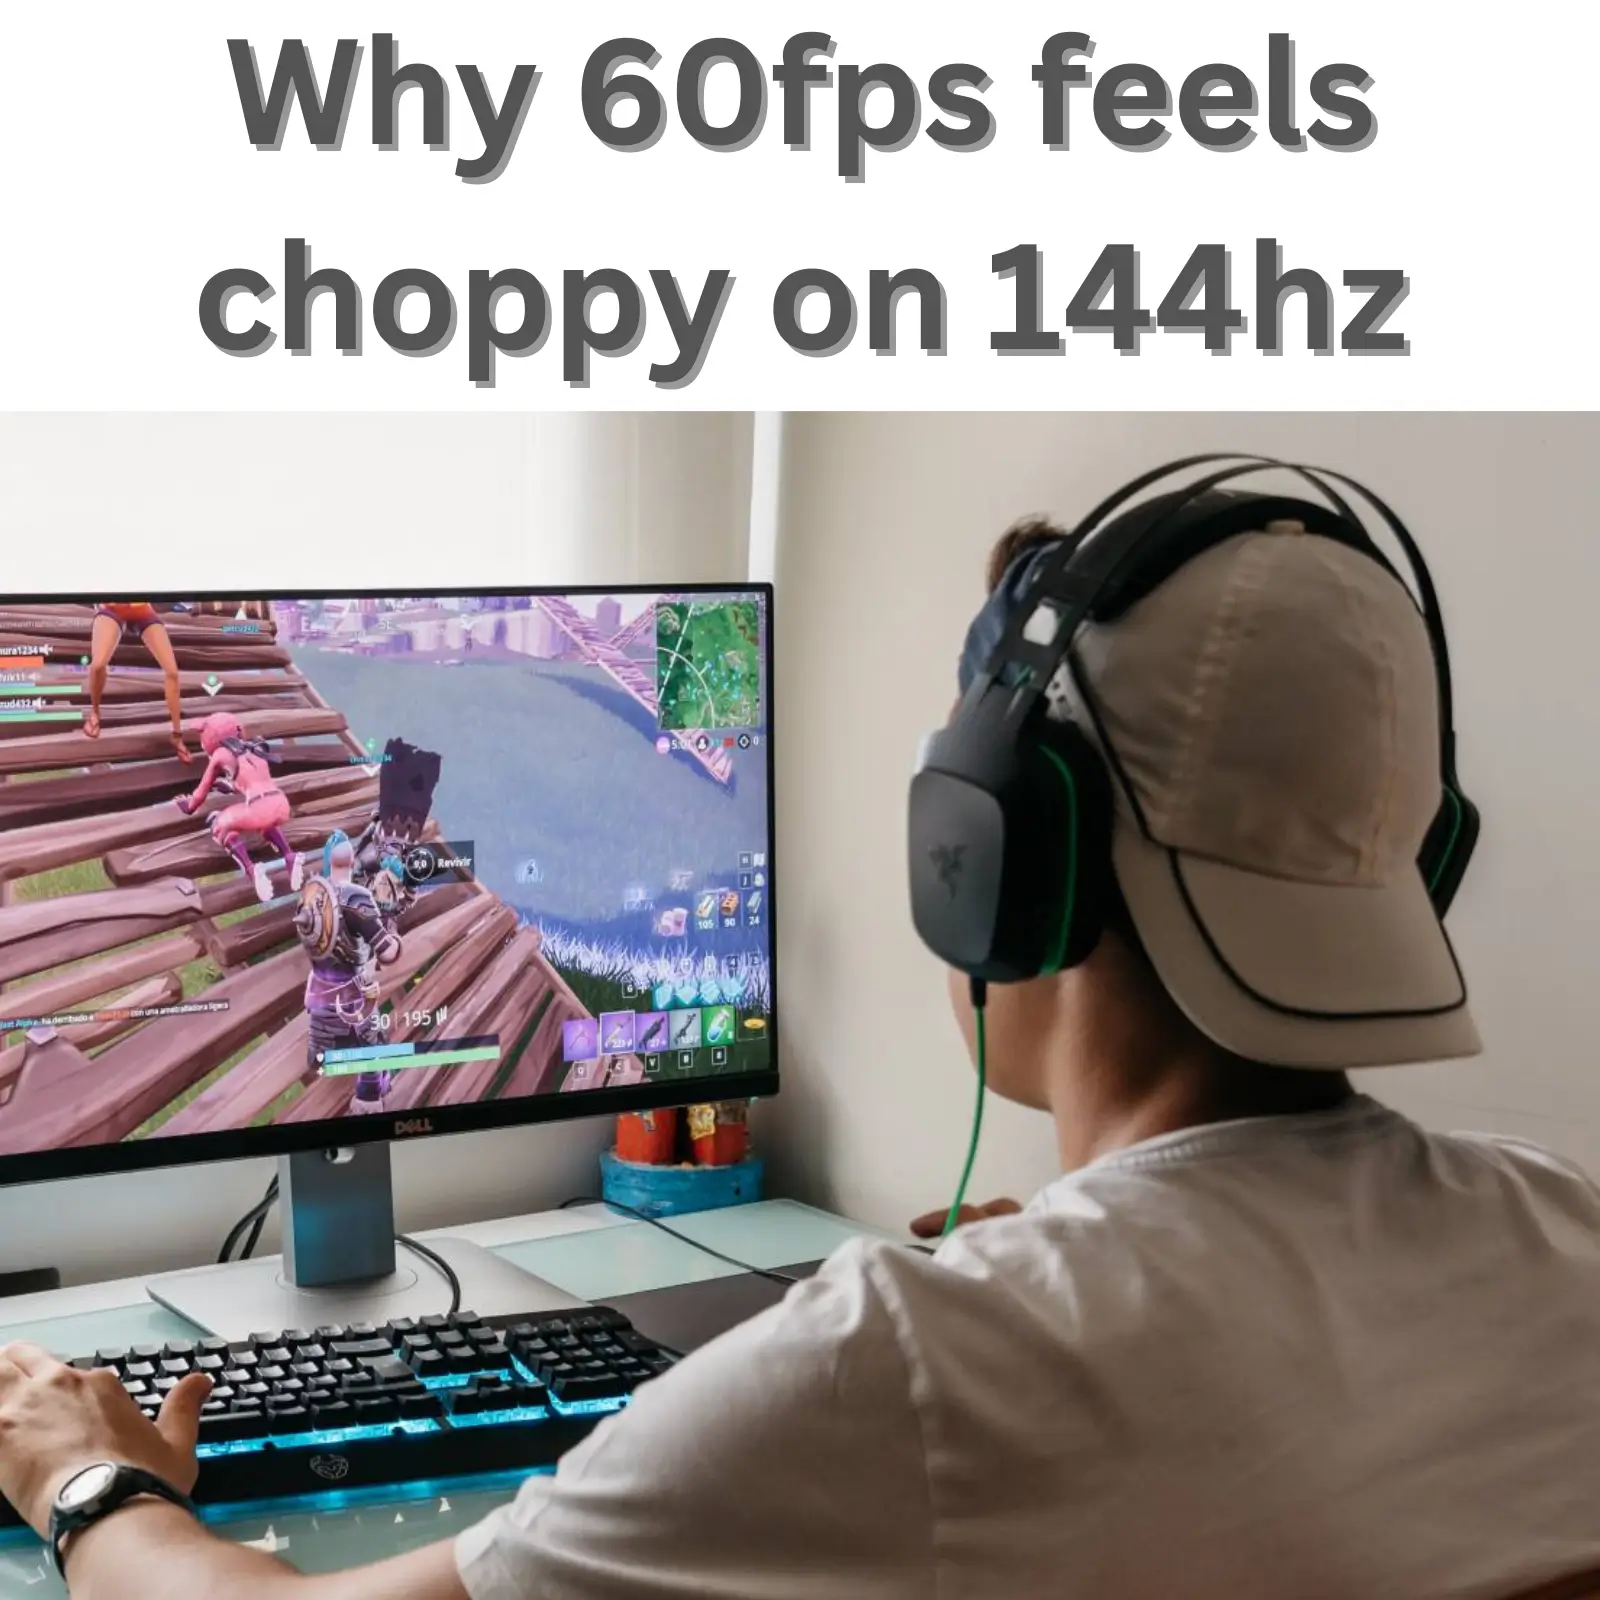 Why 60fps feels choppy on 144hz